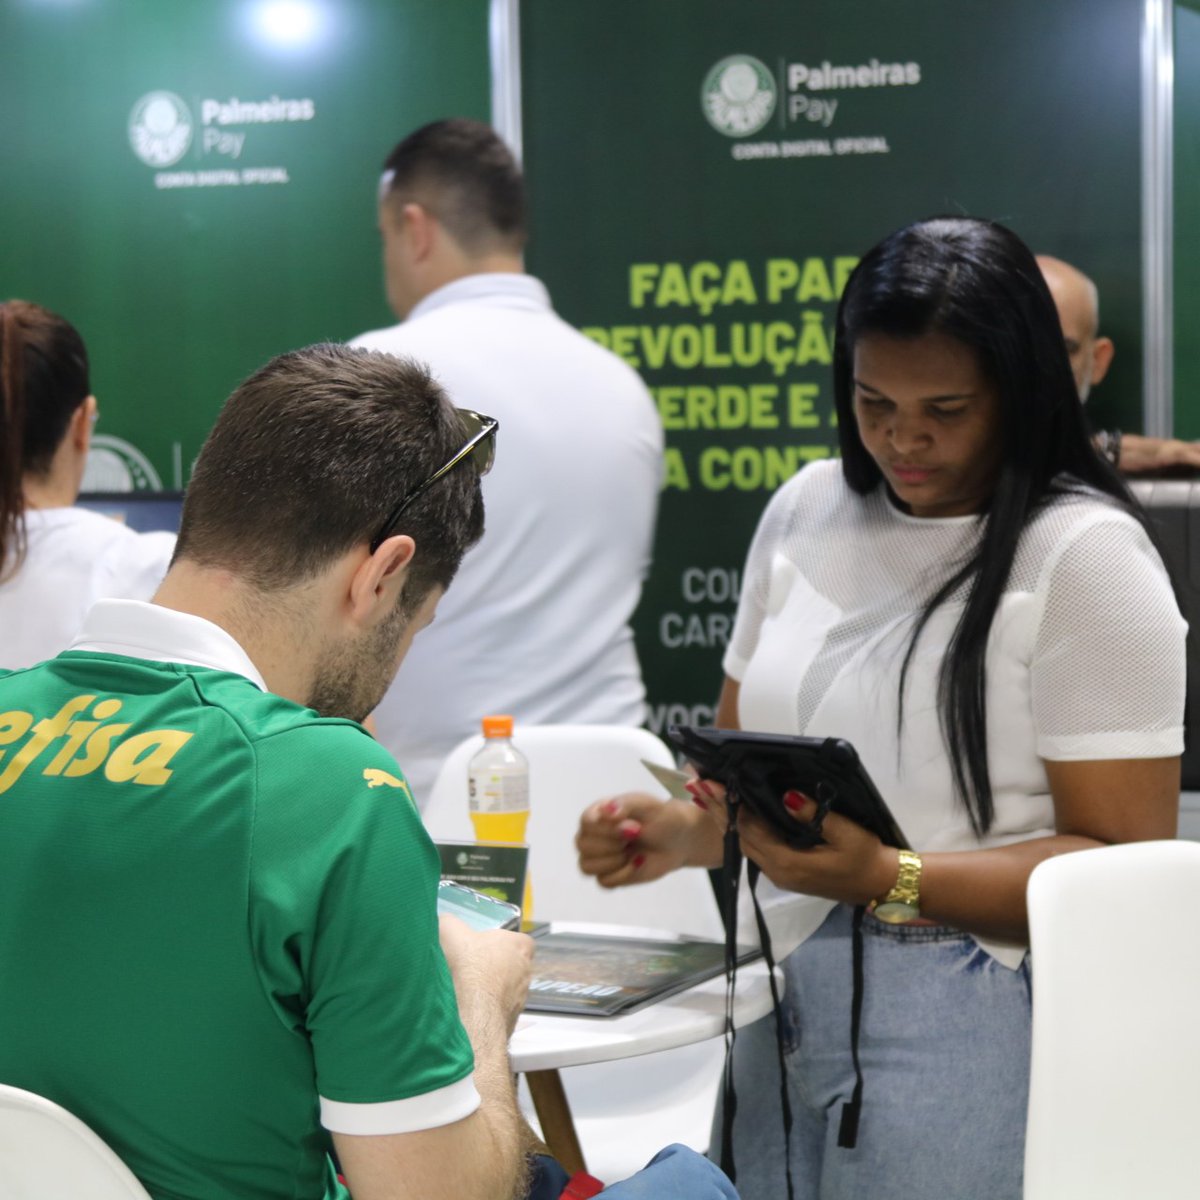 Primeiro dia ✅ Segundo dia ⏳ Segunda edição de Expo Palmeiras DAQUELE JEITO! Amanhã tem mais 🔥 #AvantiPalestra